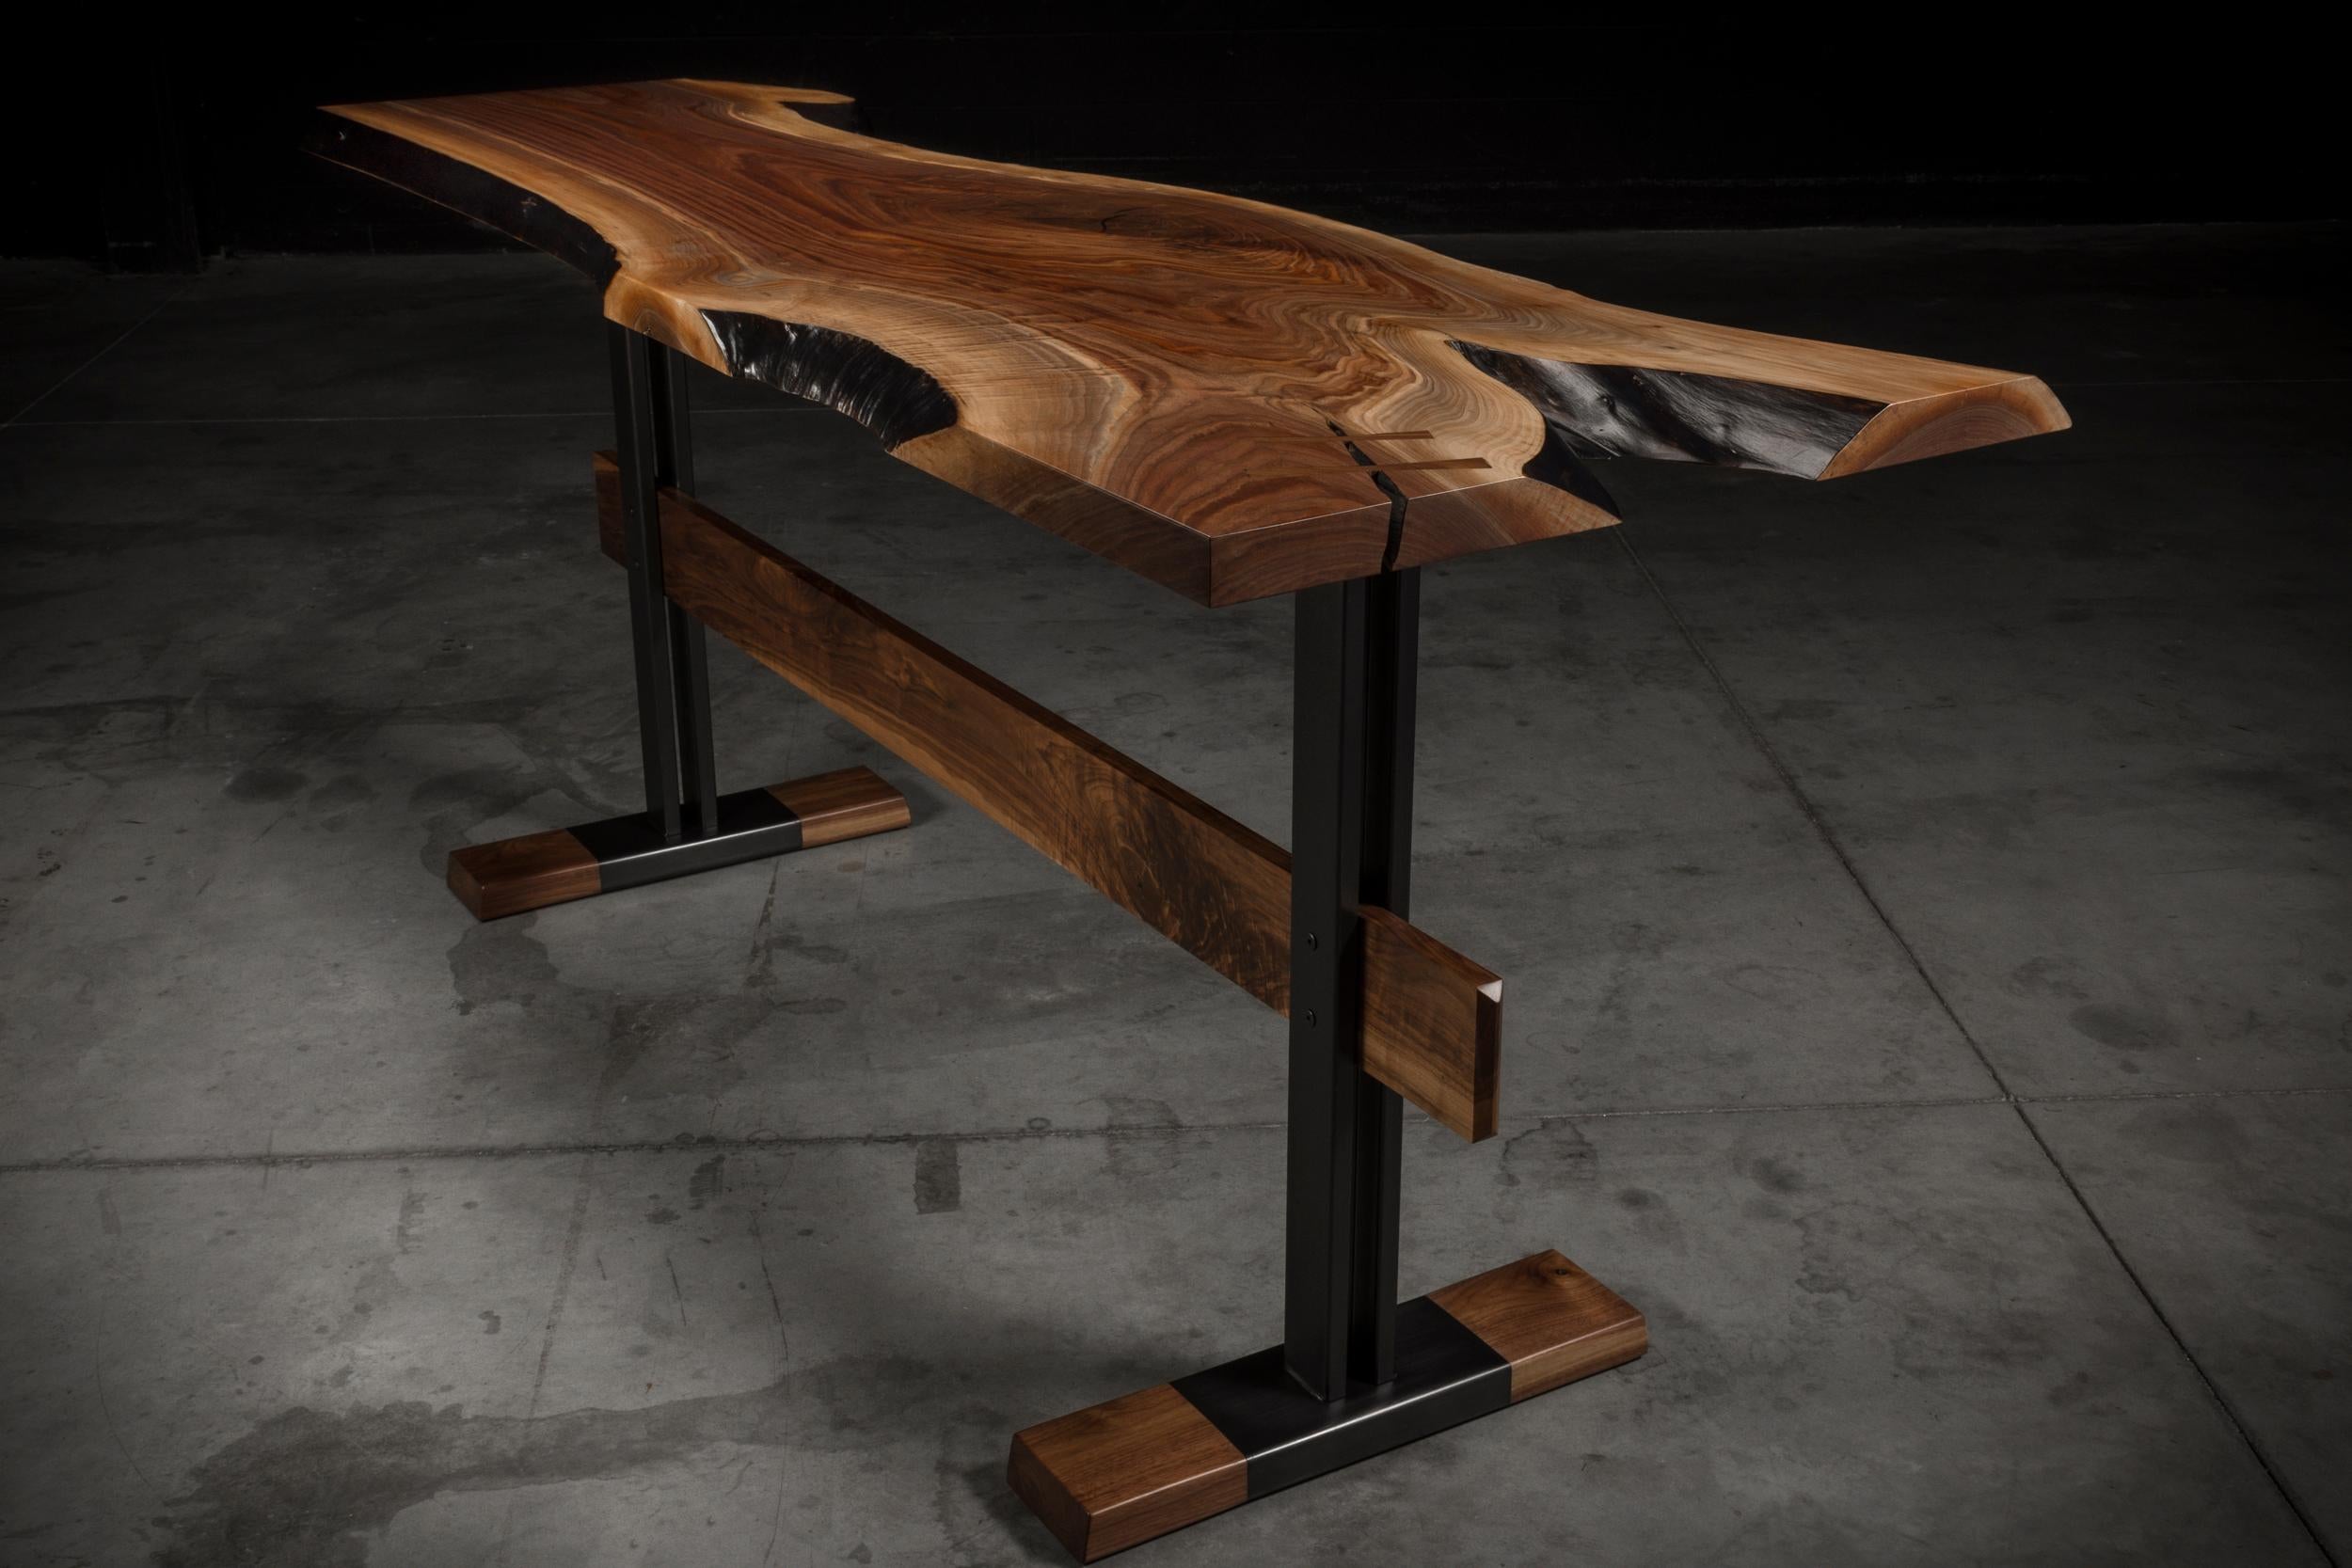 Der Cadieux-Tisch besteht aus einer einzigartigen massiven Nussbaumplatte mit lebendiger Kante, die auf einem eleganten Stahlsockel ruht. Der Sockel ist außerdem mit massivem Nussbaumholz verstärkt, um sowohl strukturelle Unterstützung als auch Stil